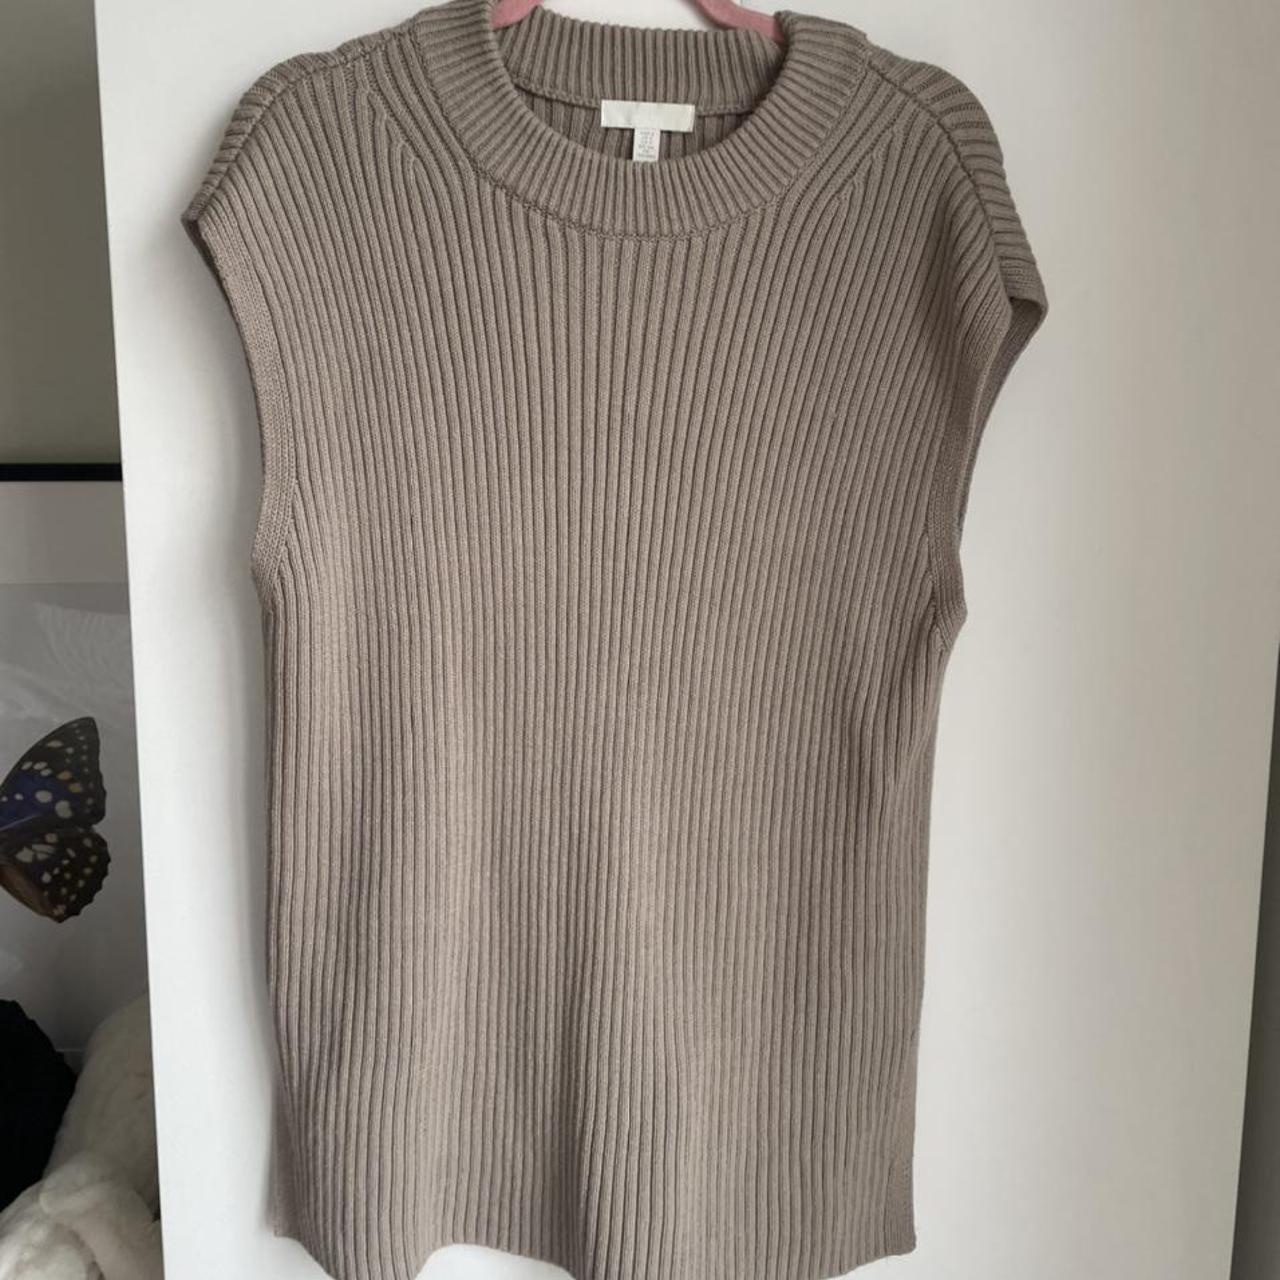 H&M oversize ribbed knit sweater vest. Size S. - Depop